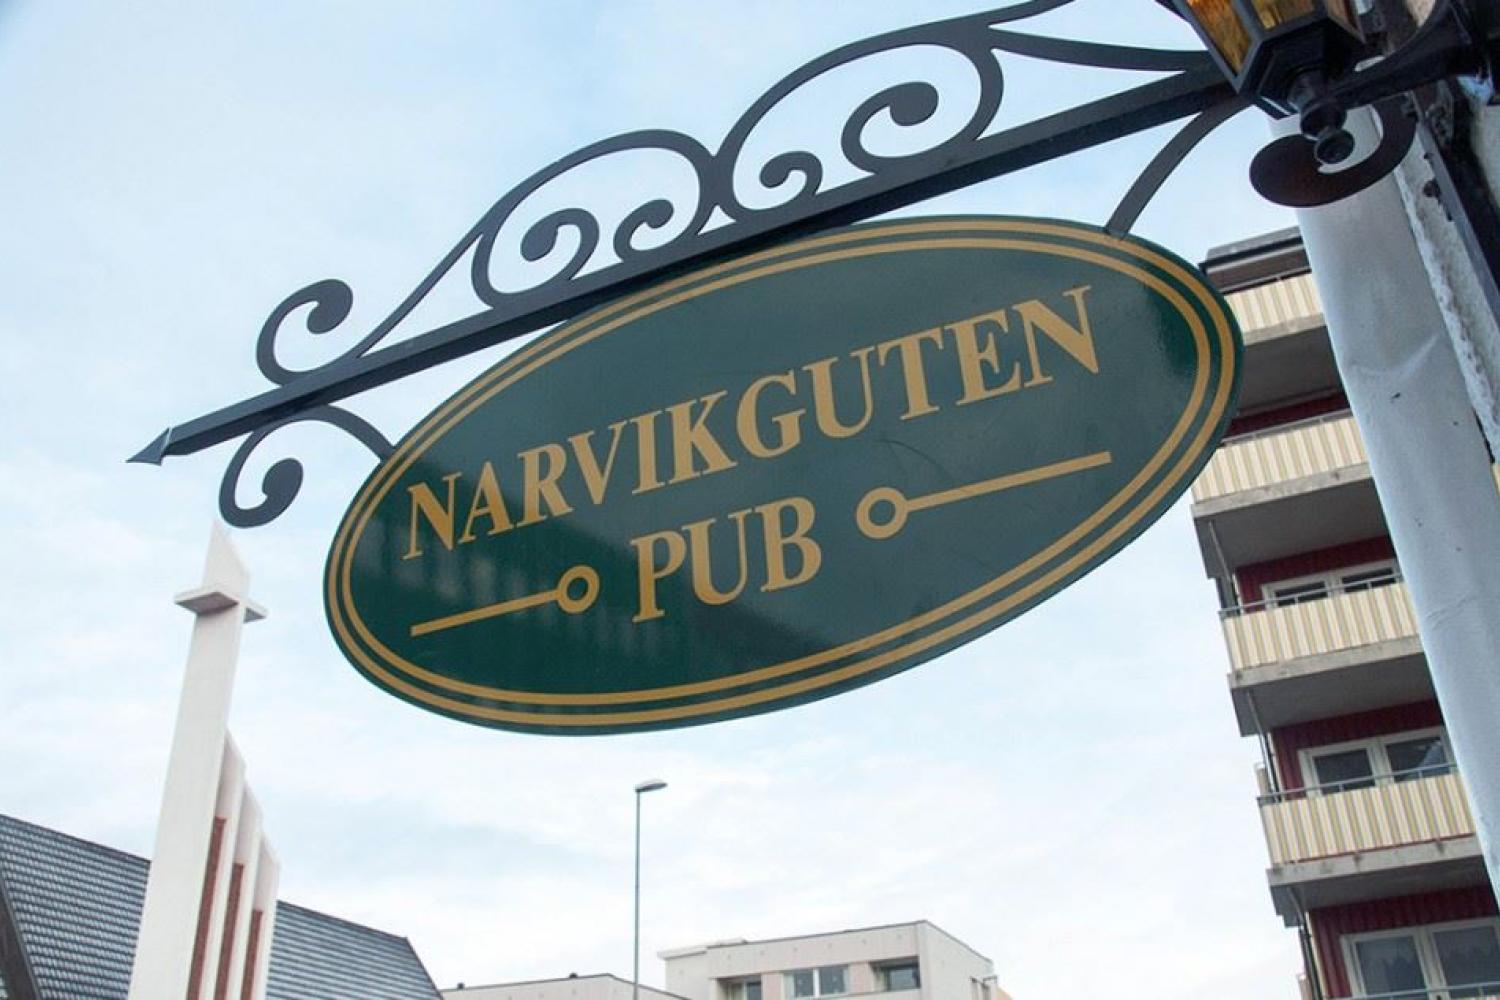 Narvikguten Pub